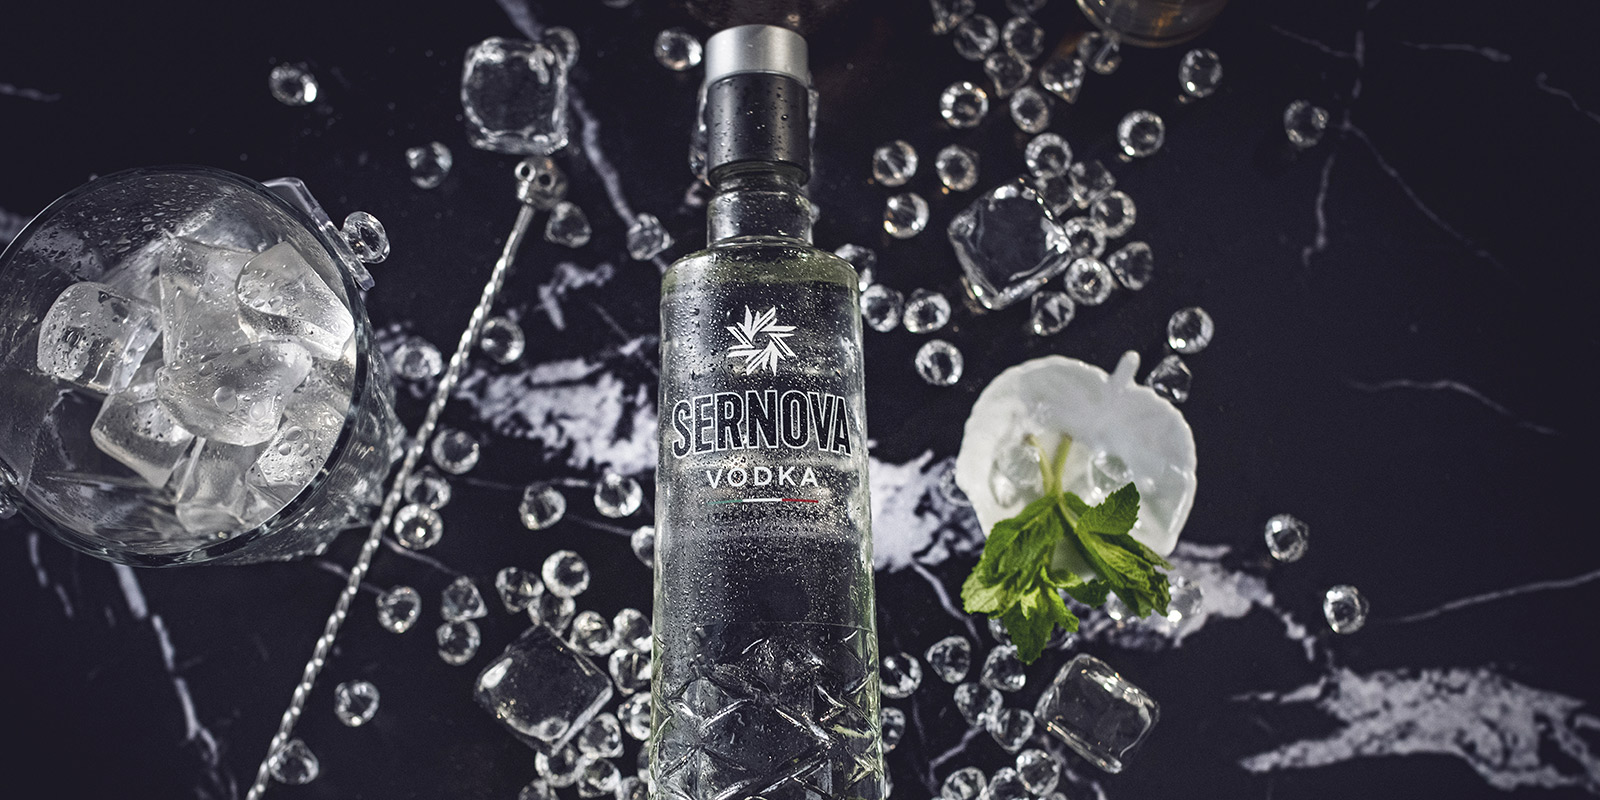 Tridimage diseño industrial de botella vodka Sernova